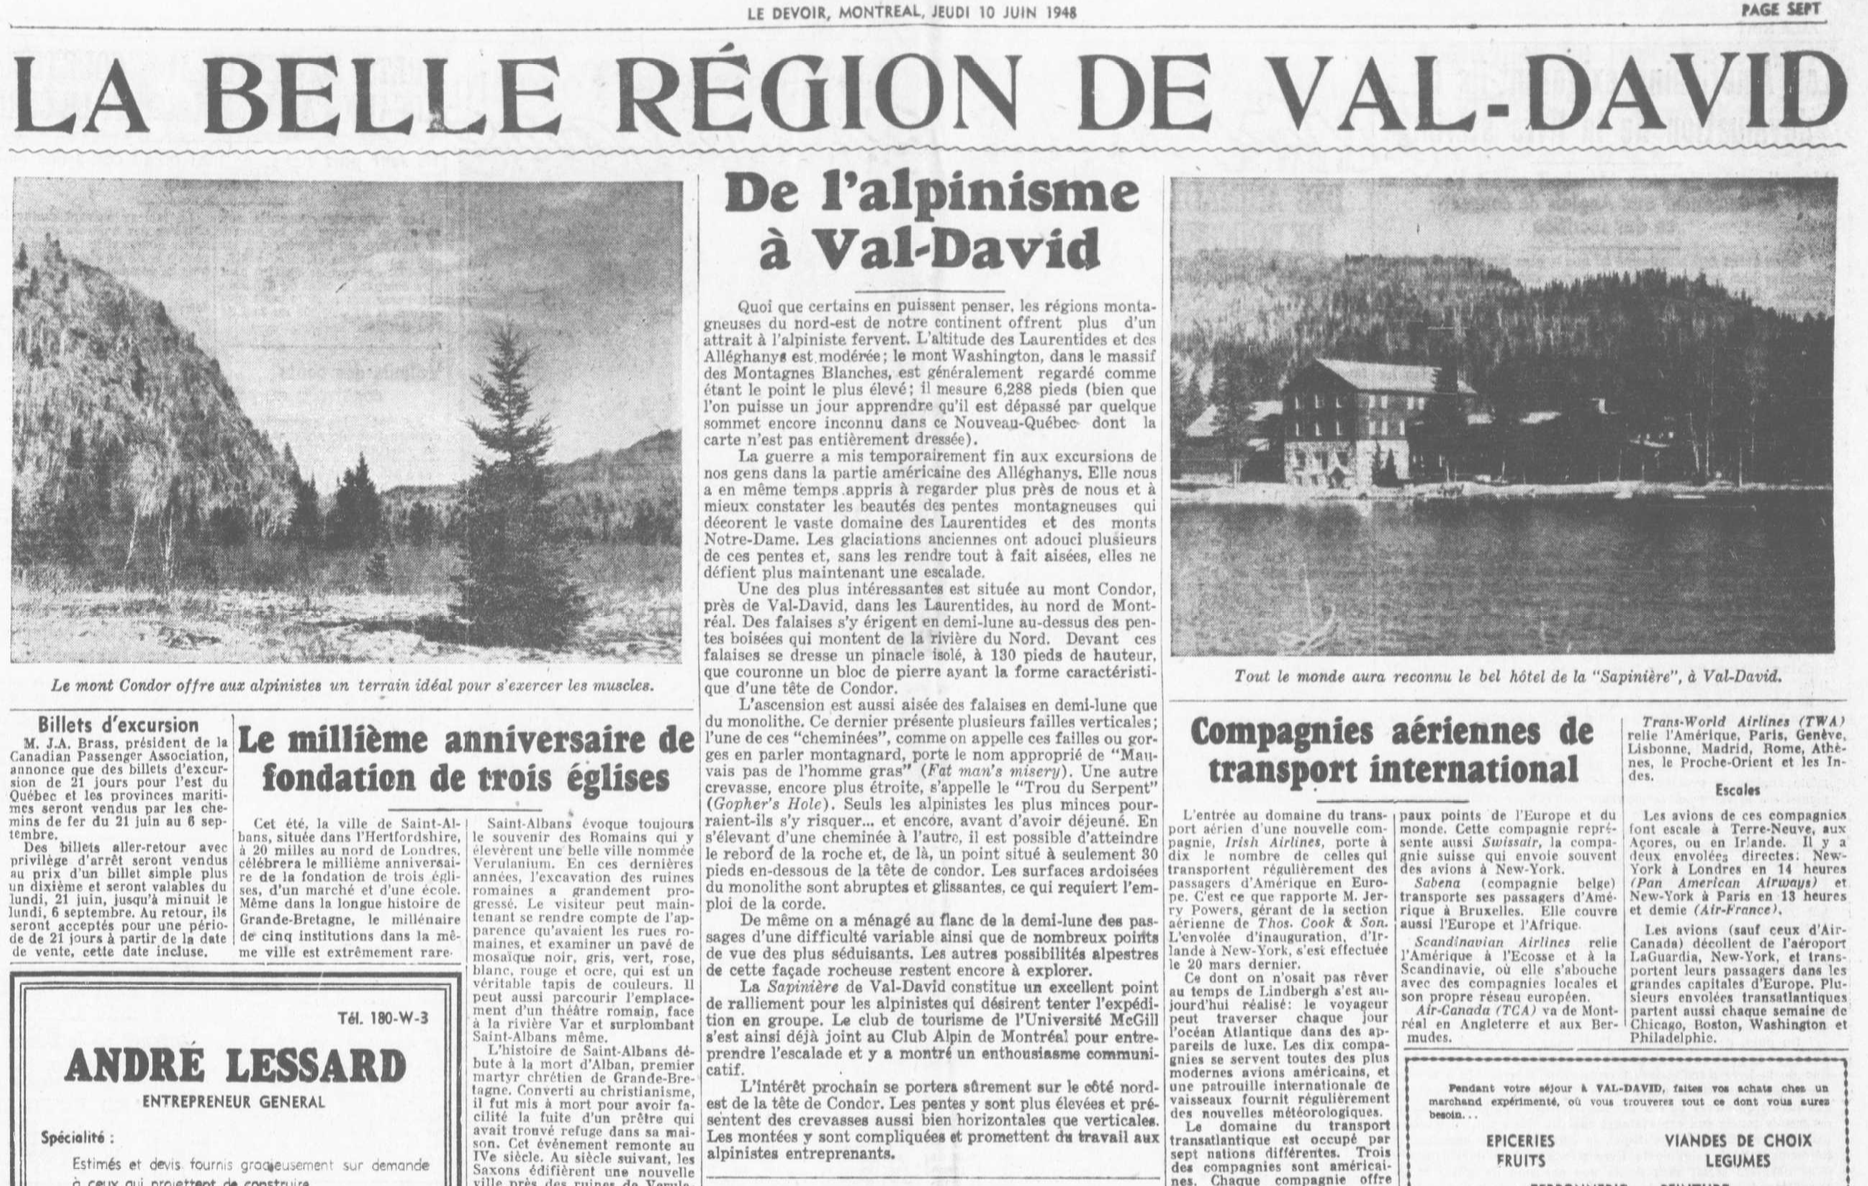 Extrait du journal Le Devoir de 1947, parlant de l’industrie du tourisme à Val-David illustré de deux paysages de la région.